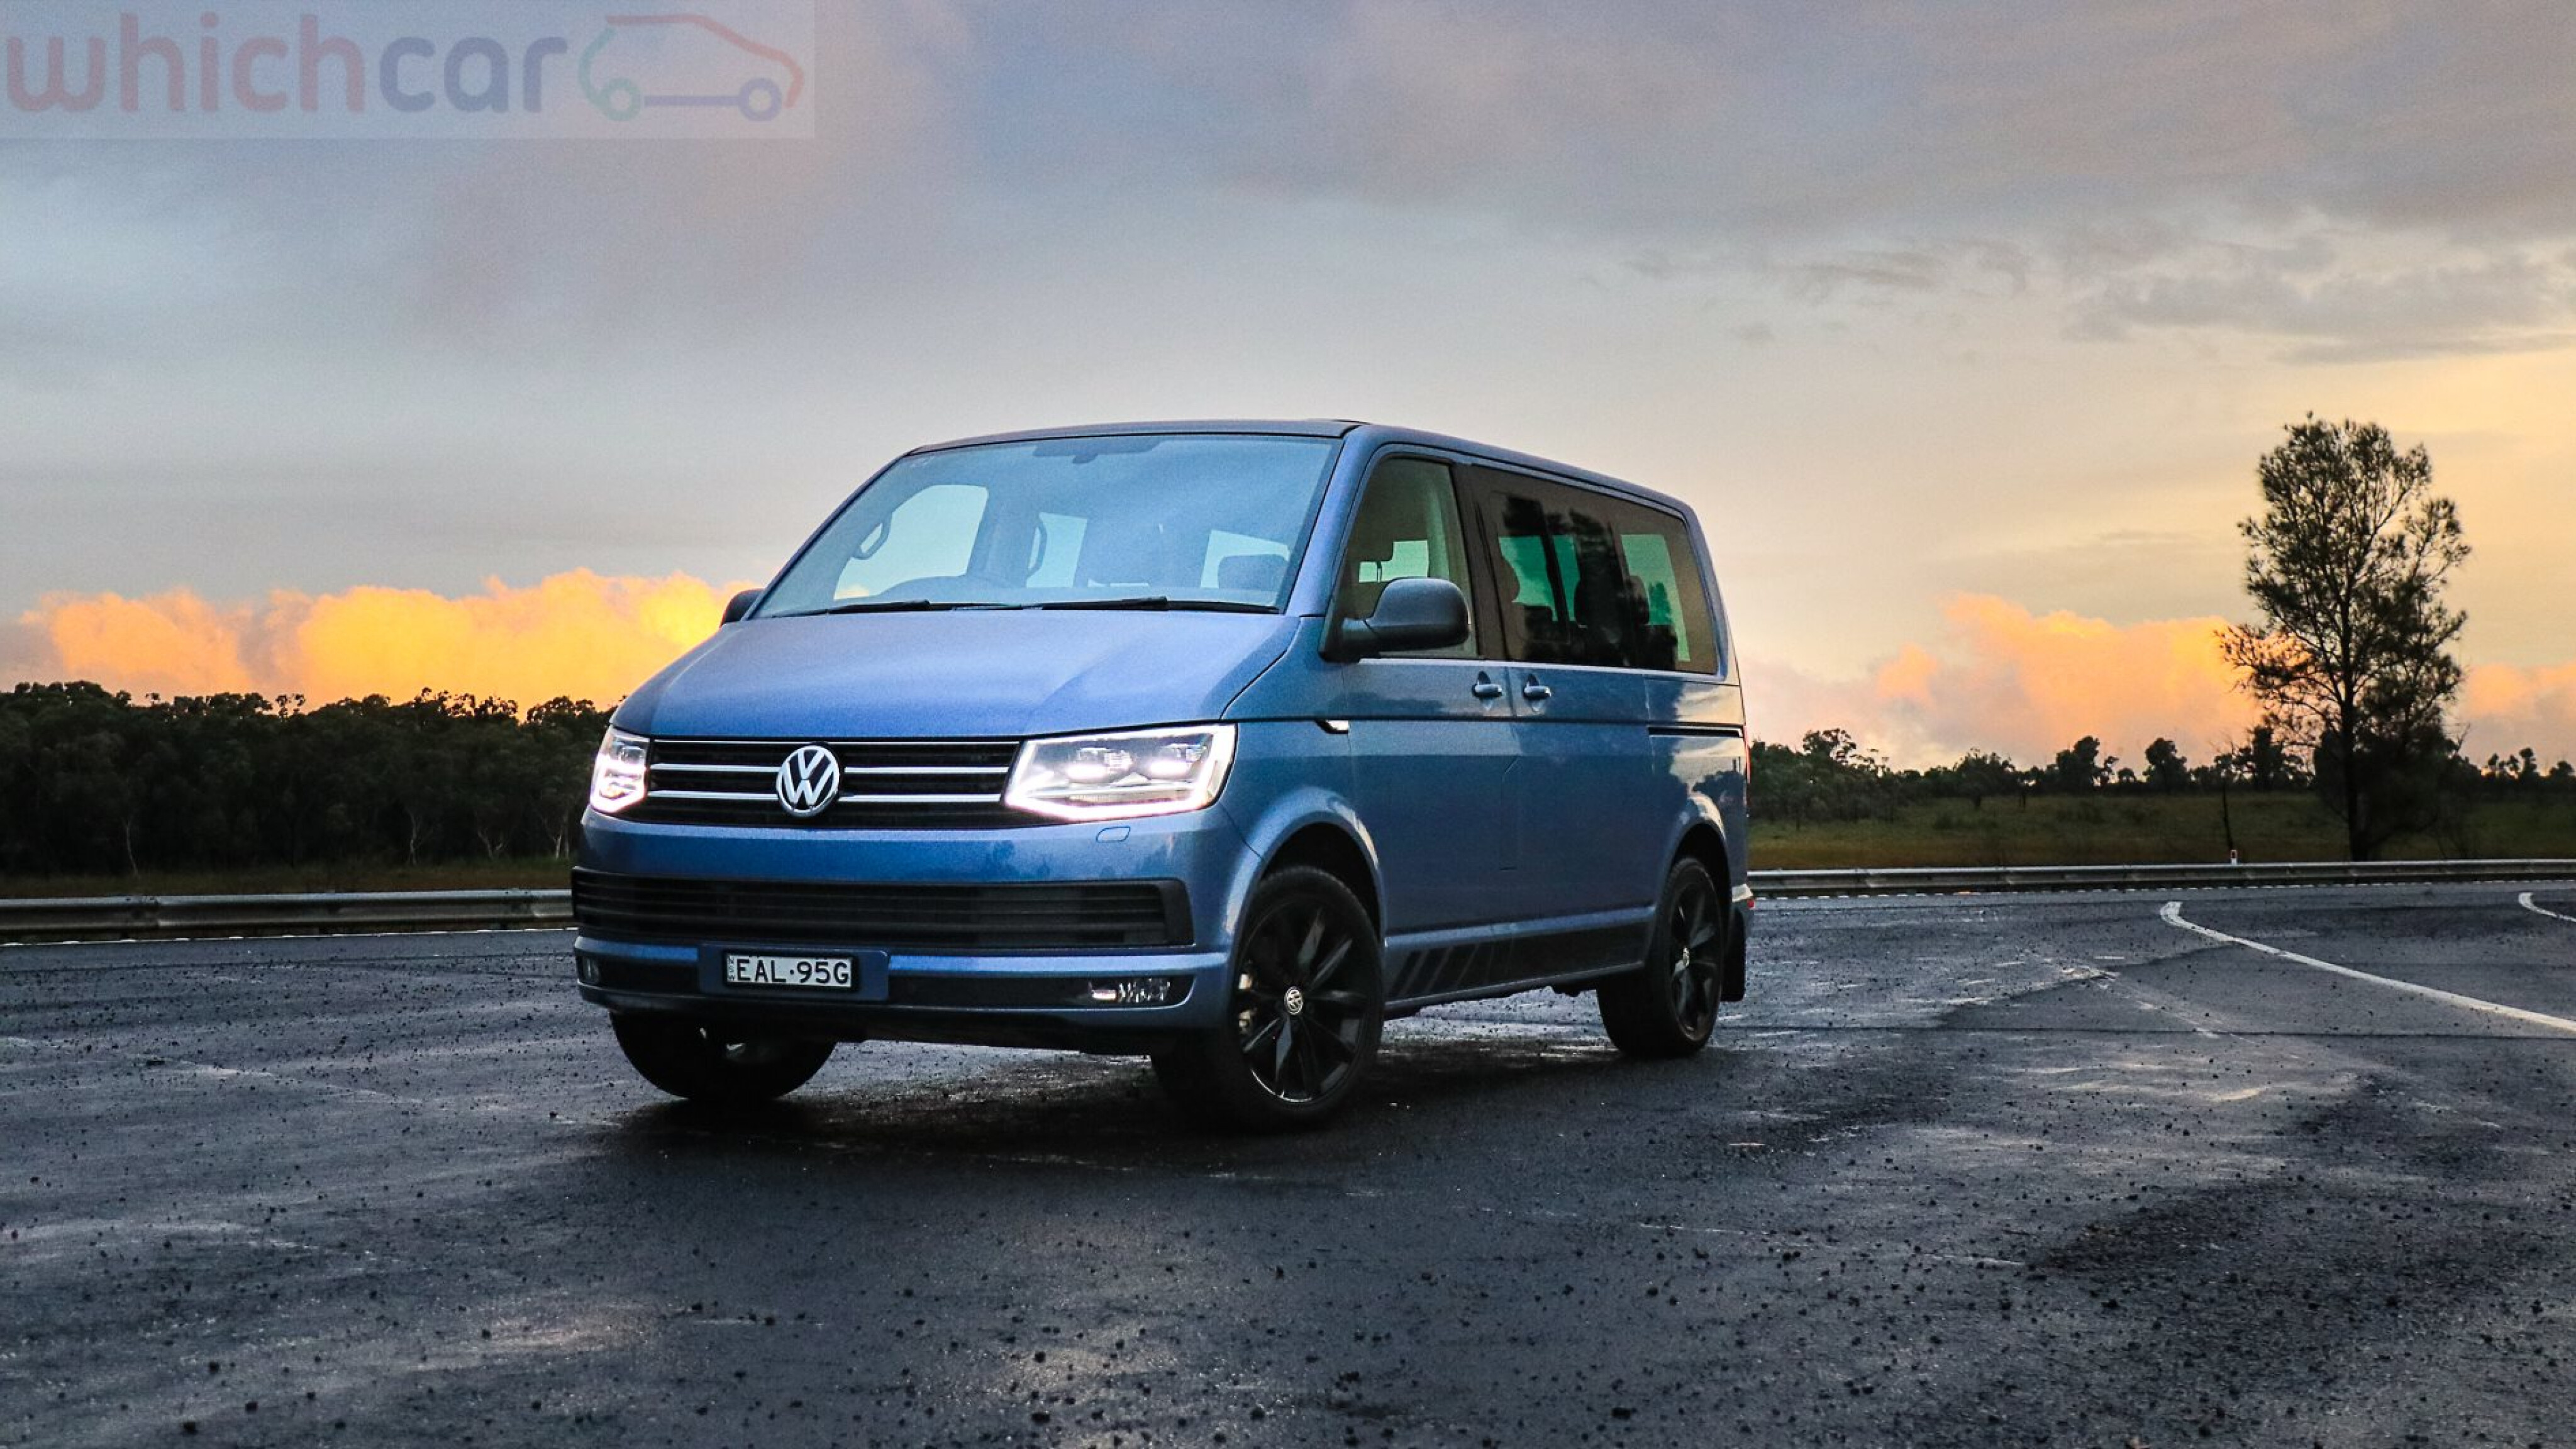 2019 Volkswagen Multivan Black Edition review